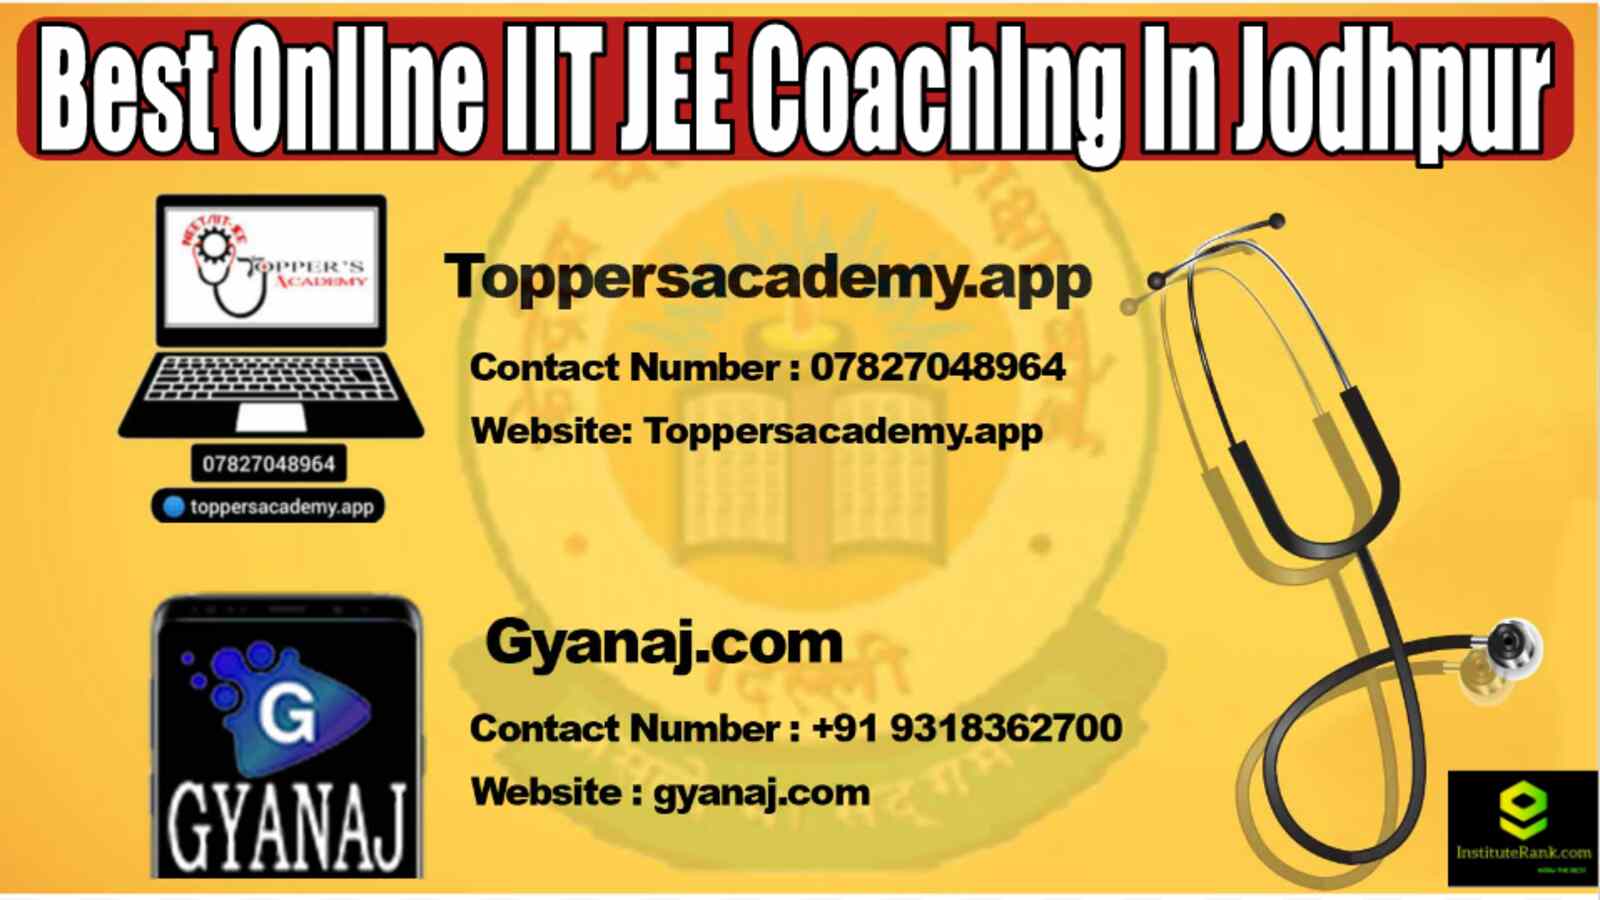 Best Online IIT JEE Coaching in Jodhpur 2022